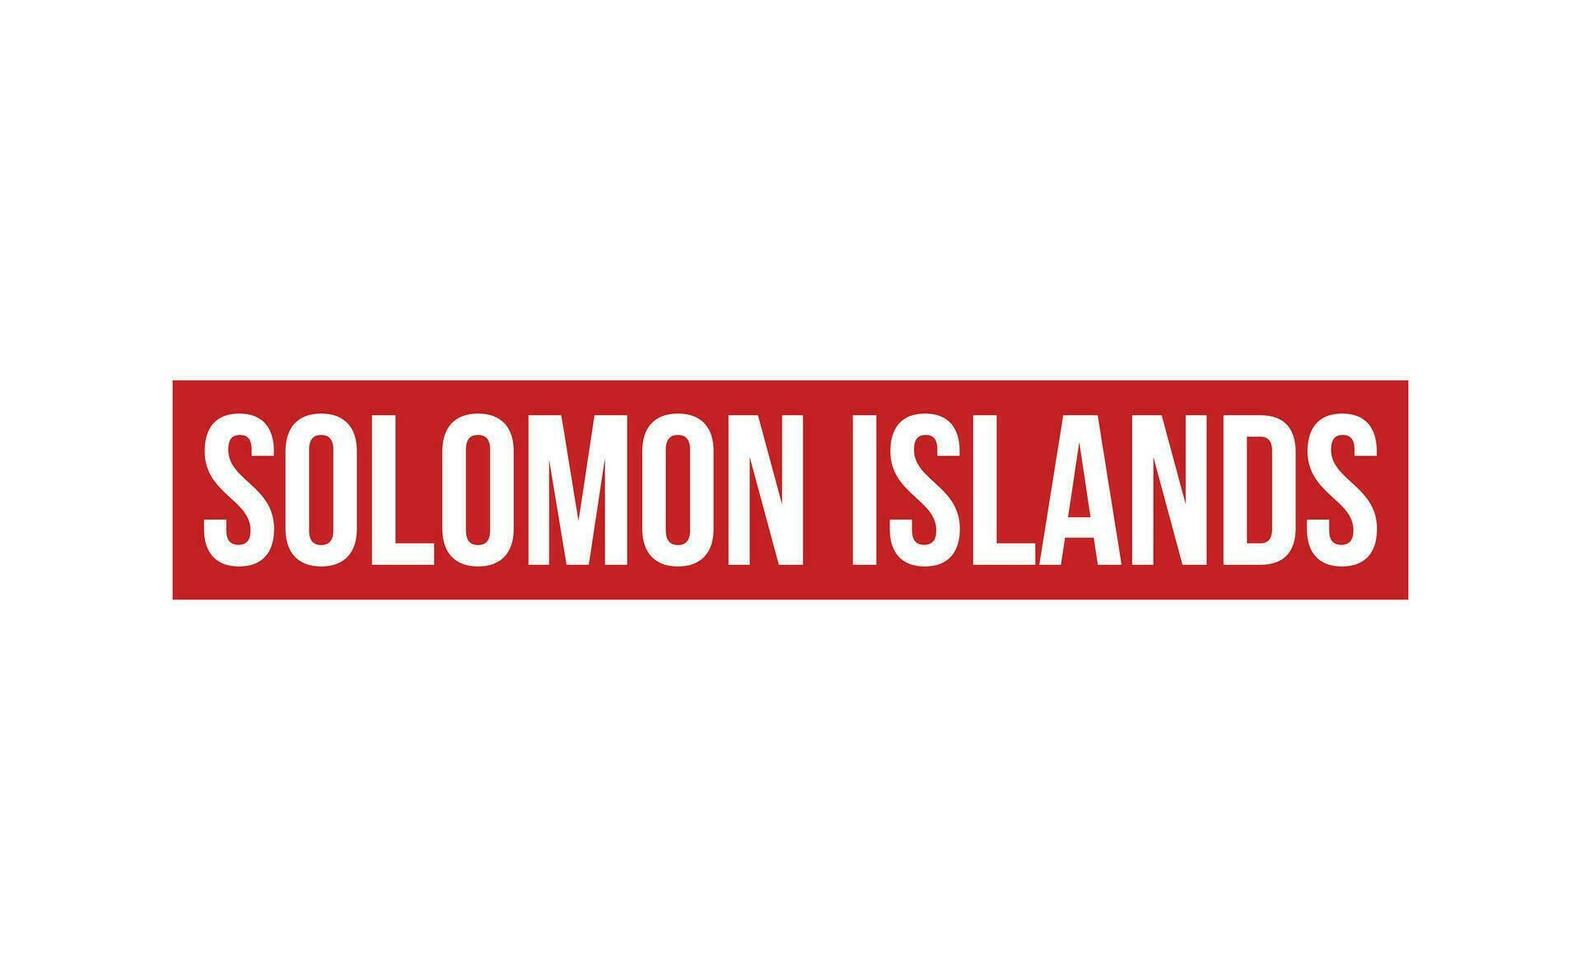 Solomon eilanden rubber postzegel zegel vector